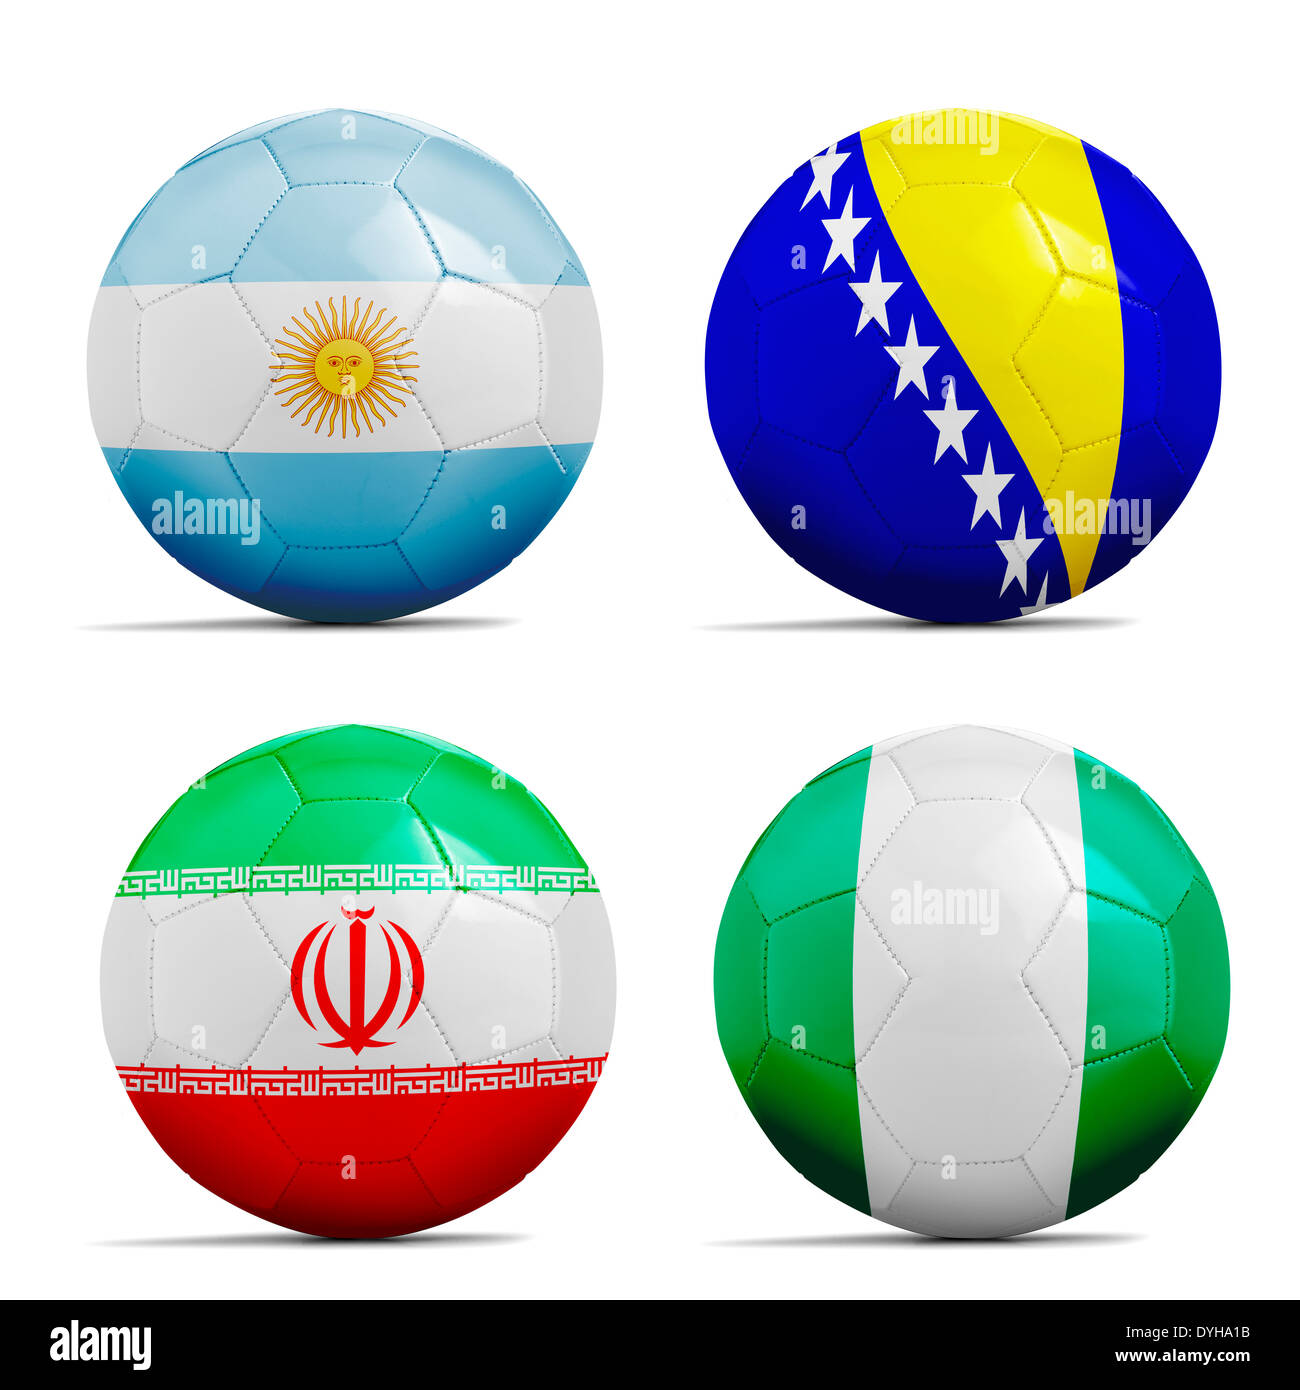 Quatre ballons de foot avec les équipes du groupe F, le Brésil 2014 Drapeaux Football. Banque D'Images